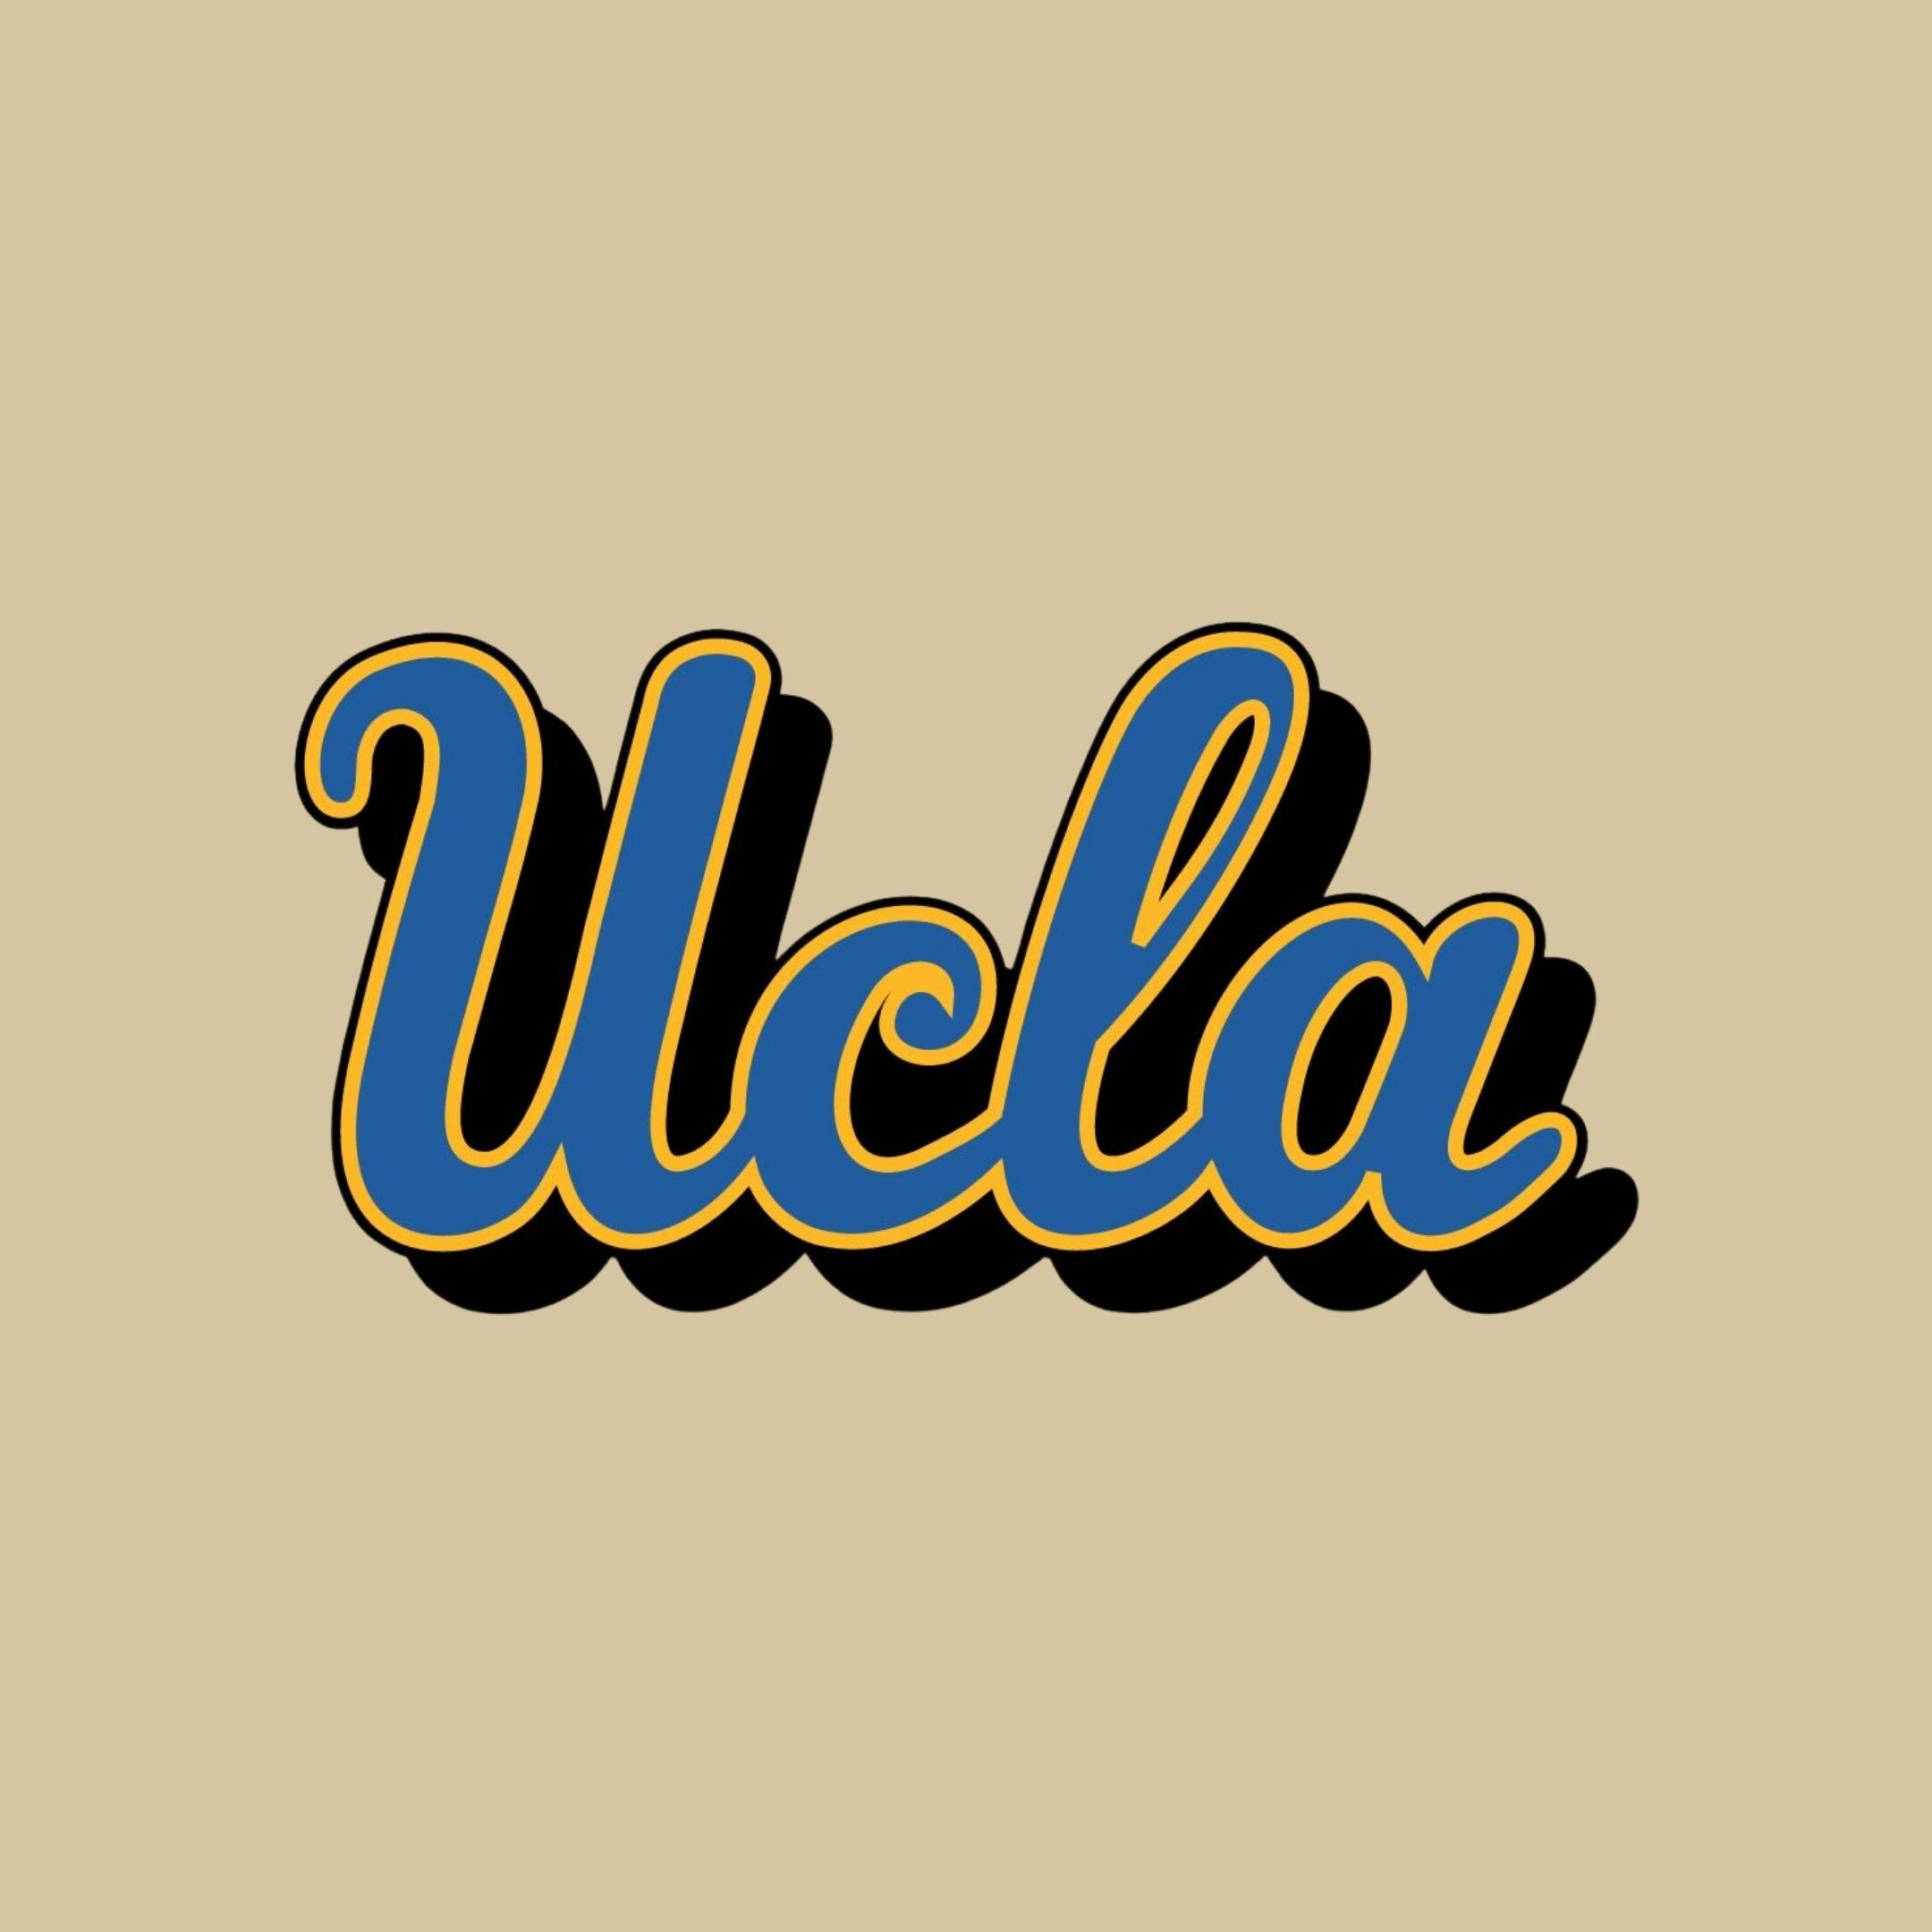 UCLA_Guide-Social.jpg